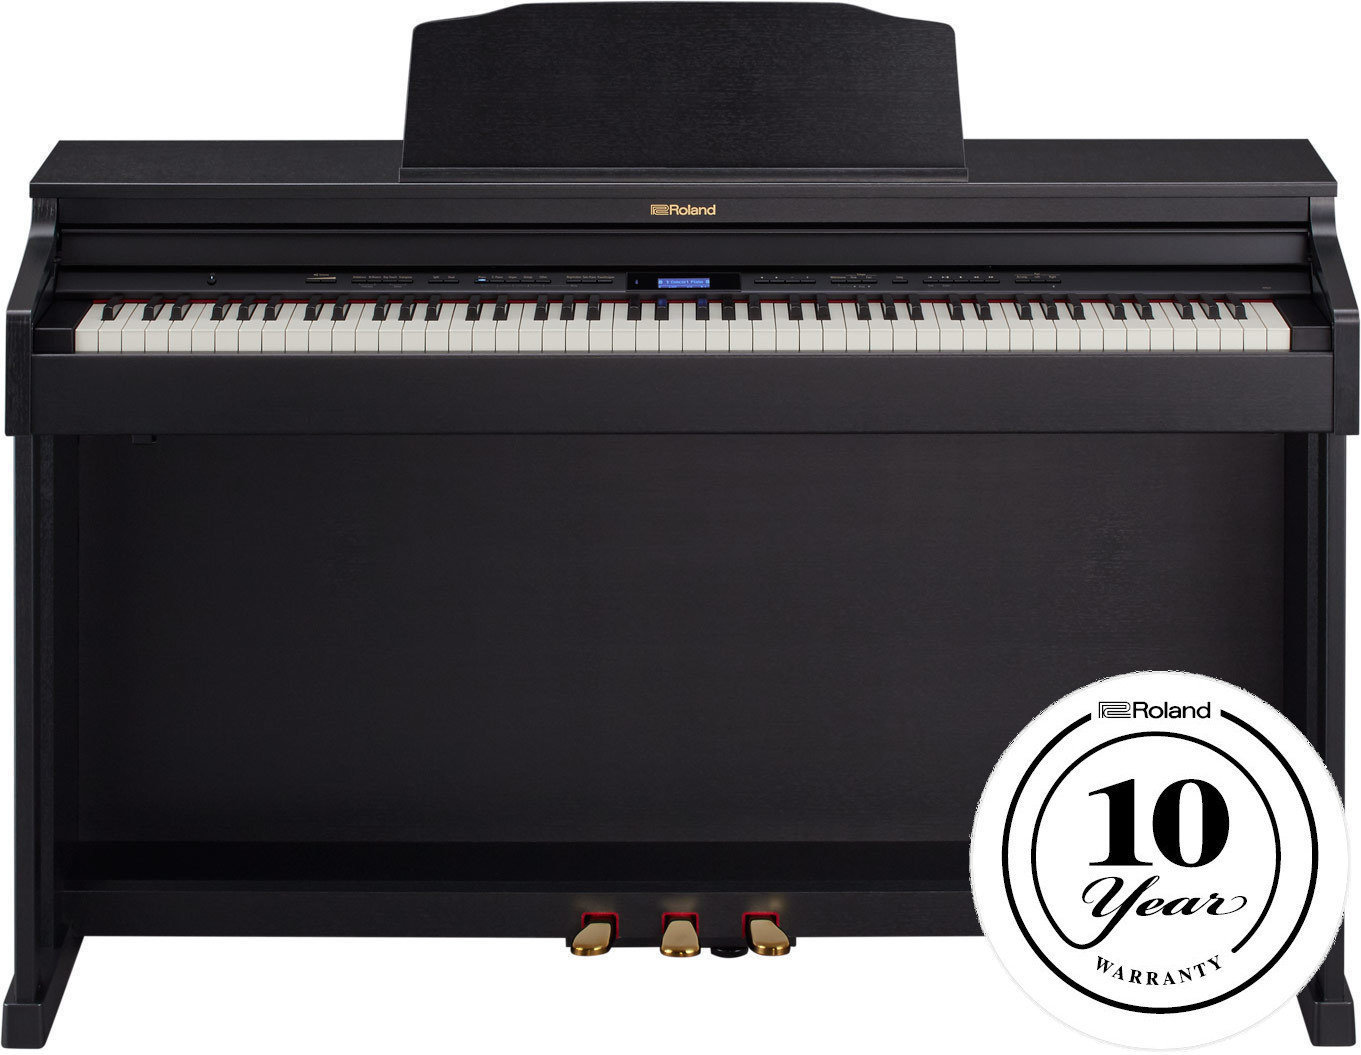 Digitale piano Roland HP-601 CB